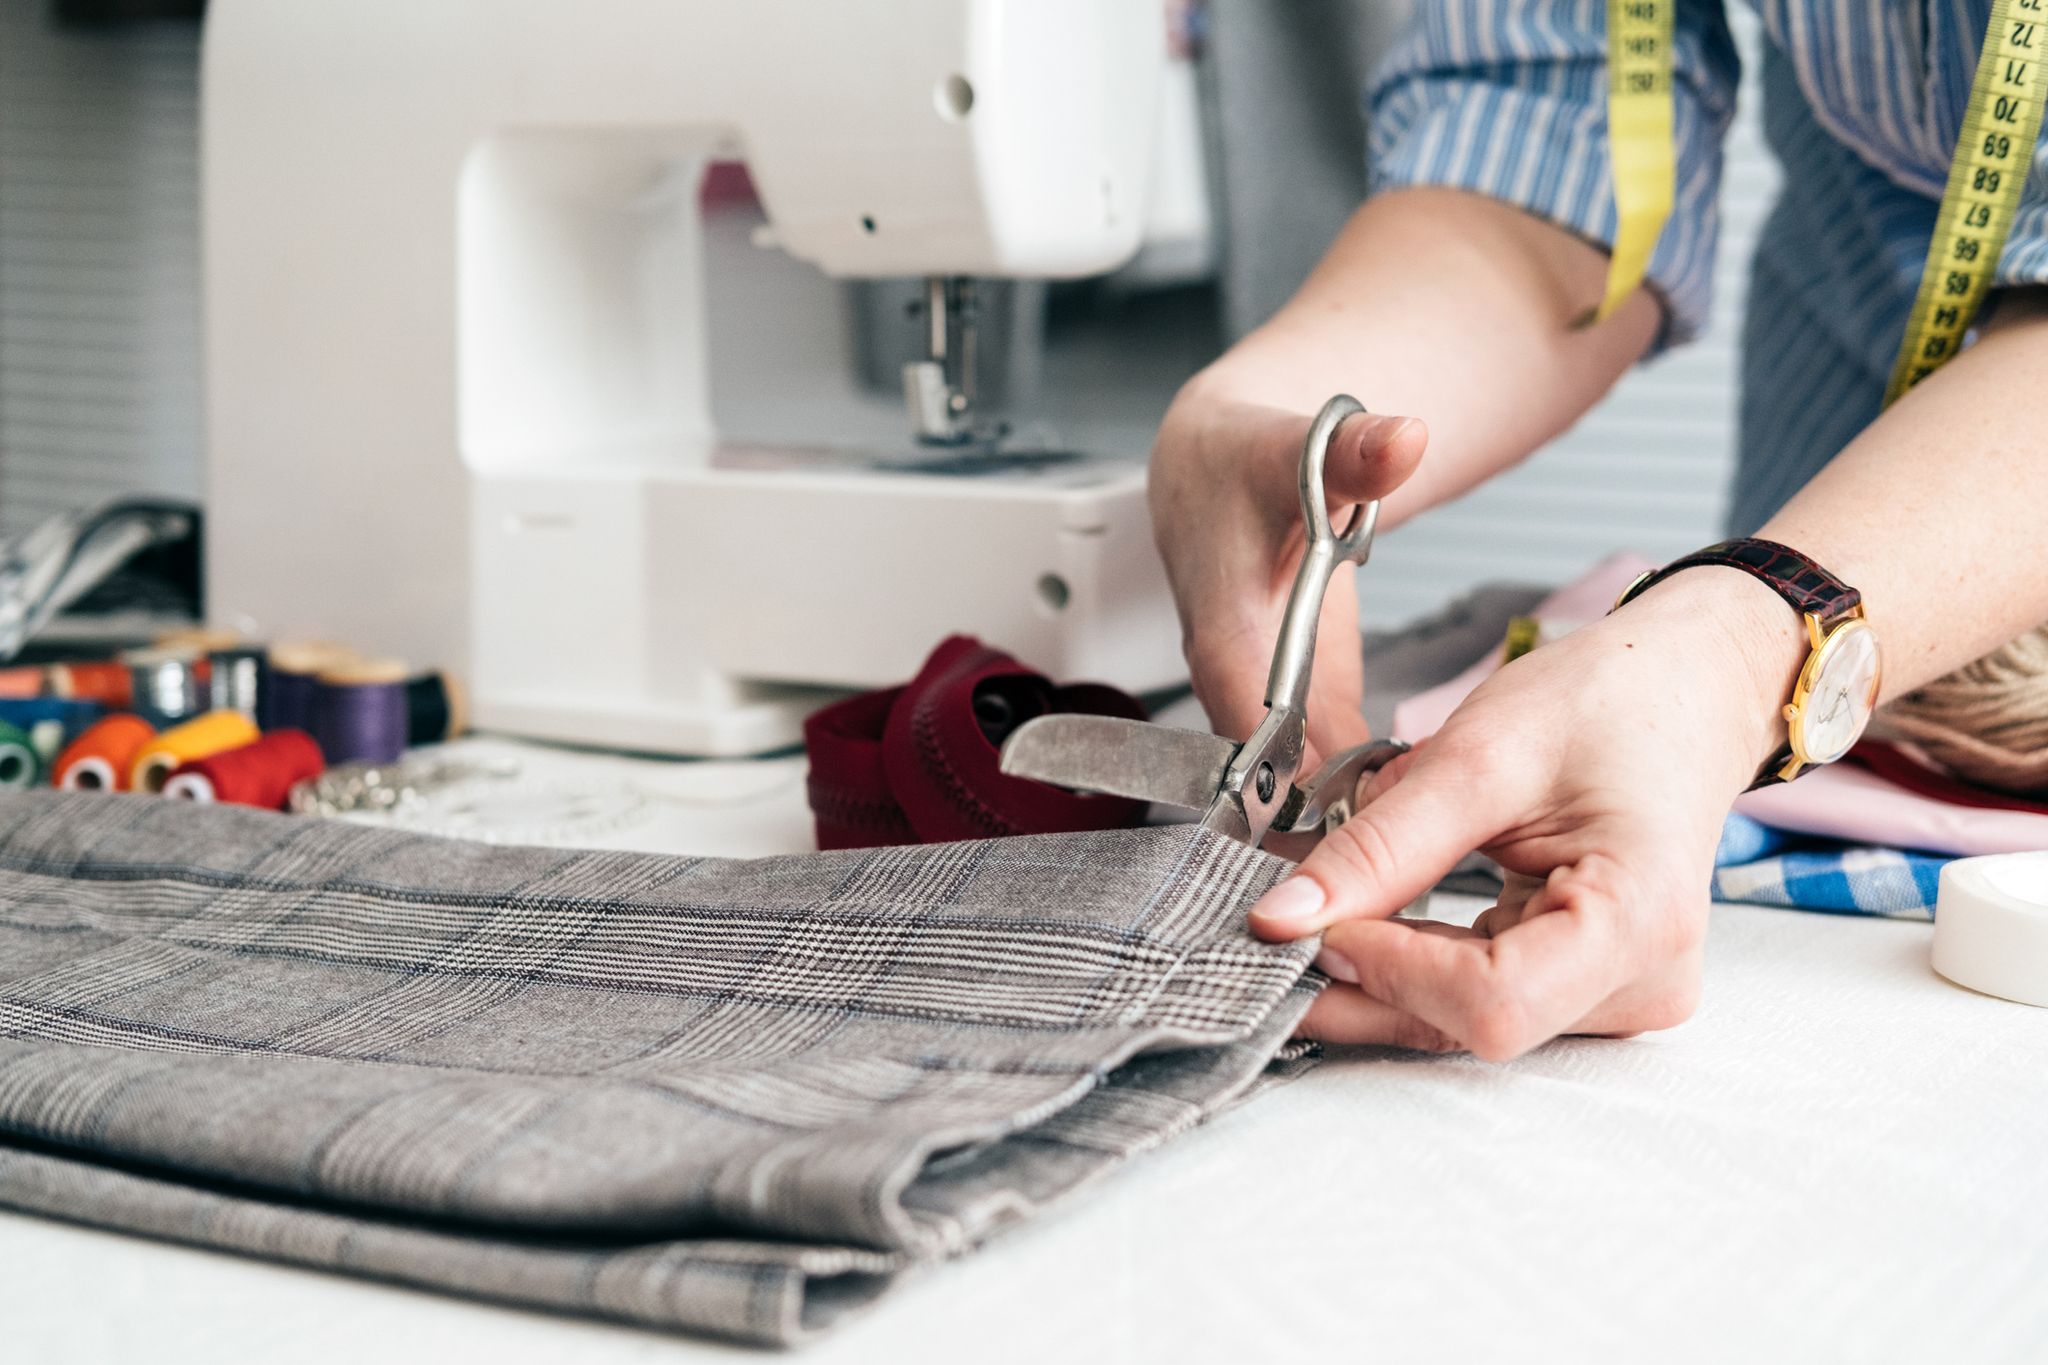 Máquinas de coser: 4 opciones top para principiantes